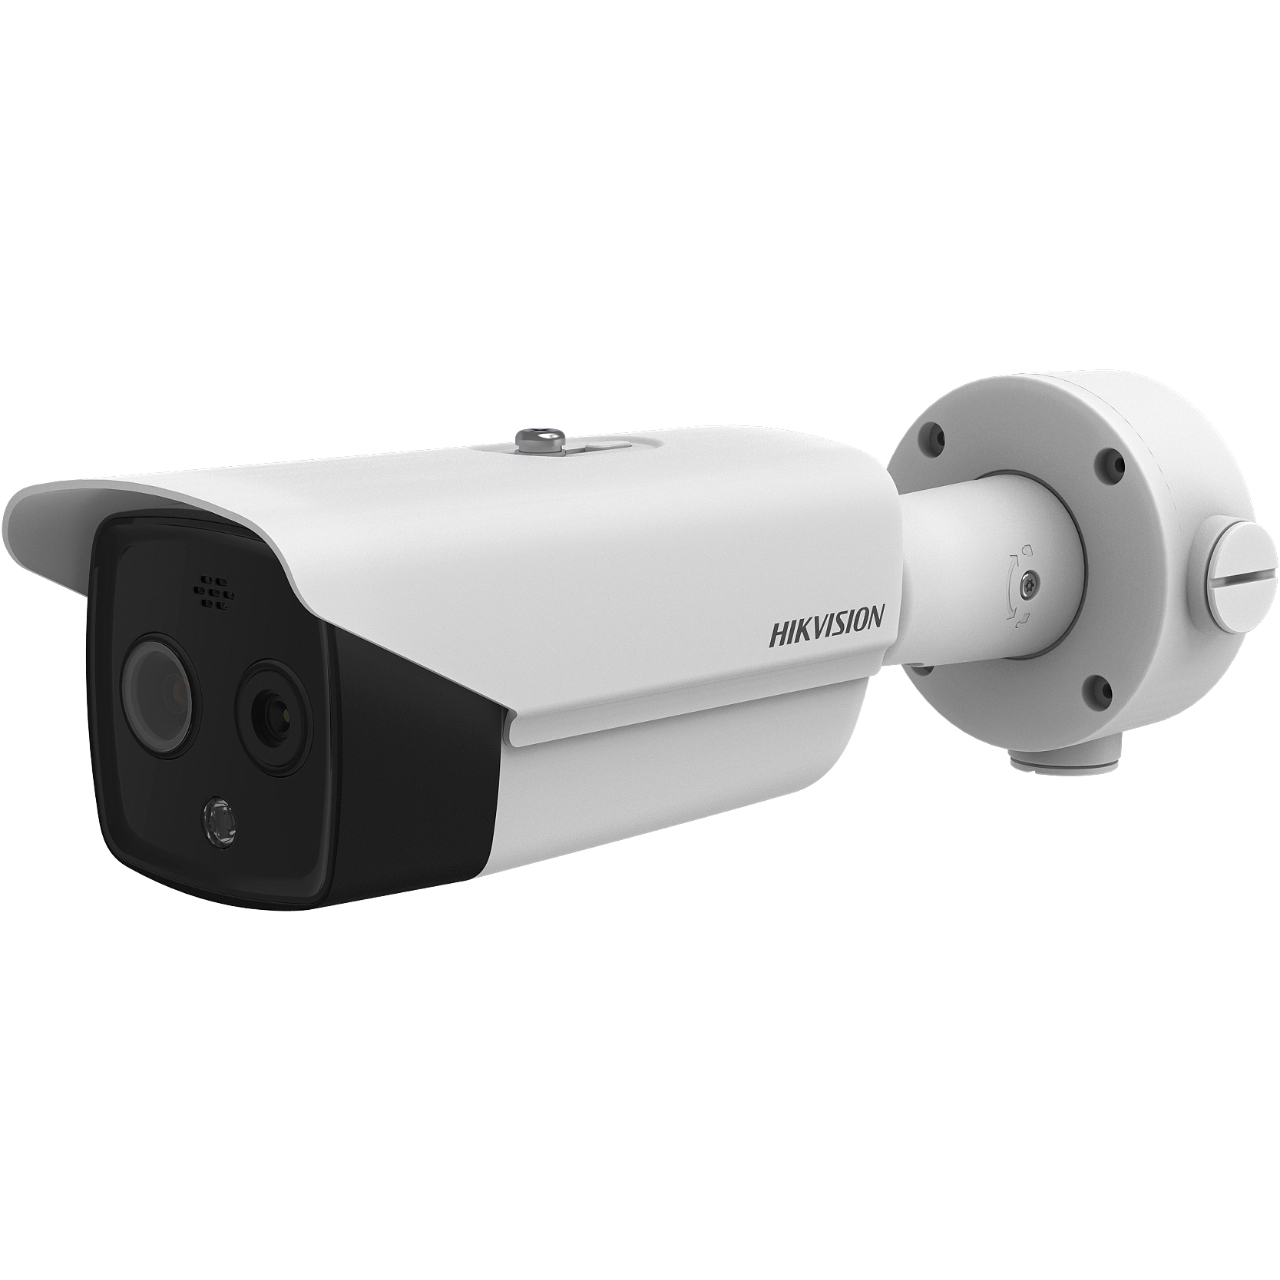 20001002 Hikvision HeatPro Caméra IP Bullet Thermique et Optique bi-spectre VCA, -20~150°C (± 8 °C), 6mm